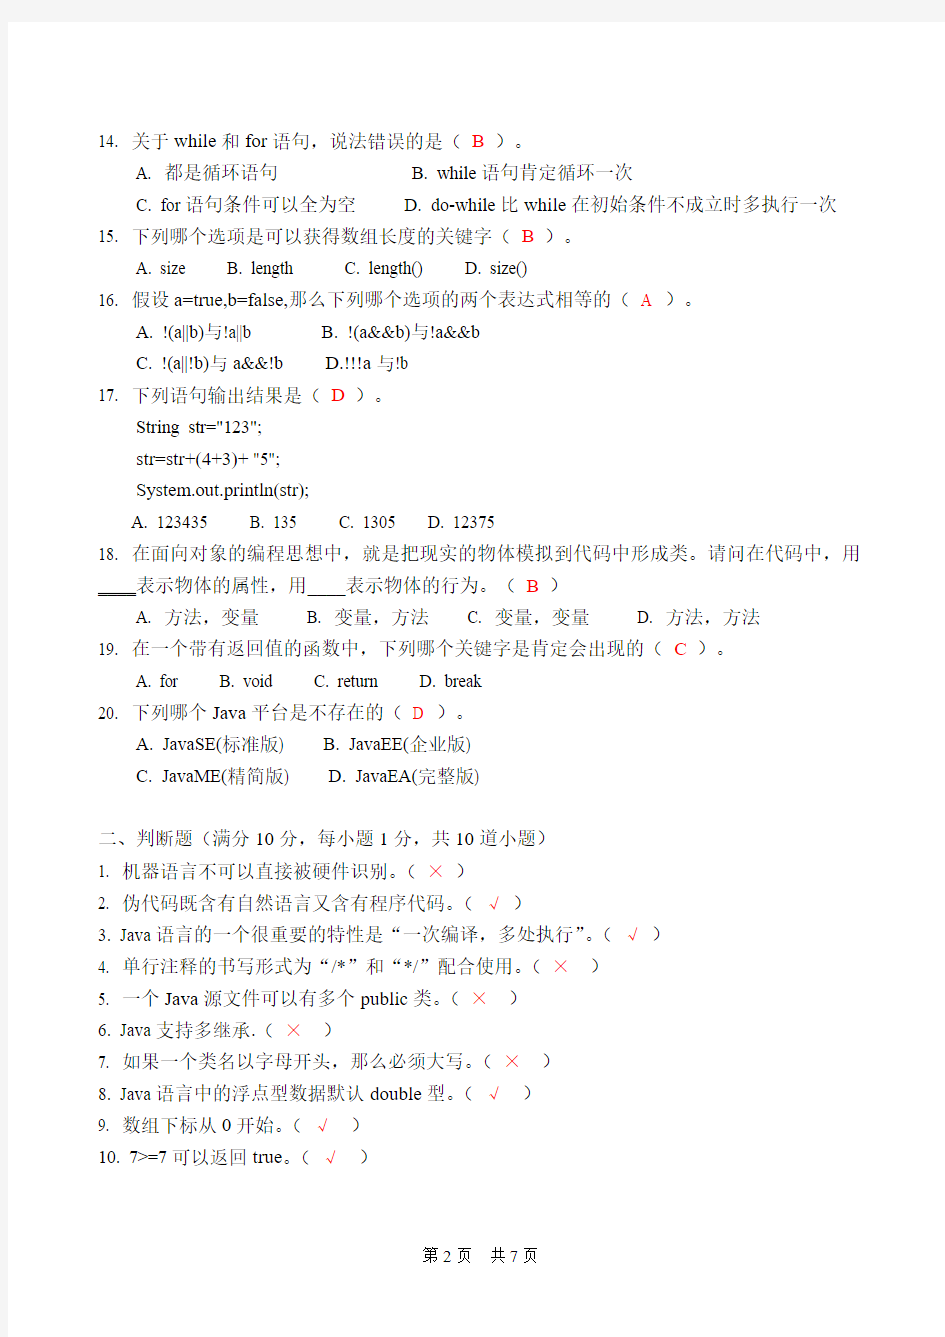 北京交通大学海滨学院《 Java语言程序设计 》期末考试试题